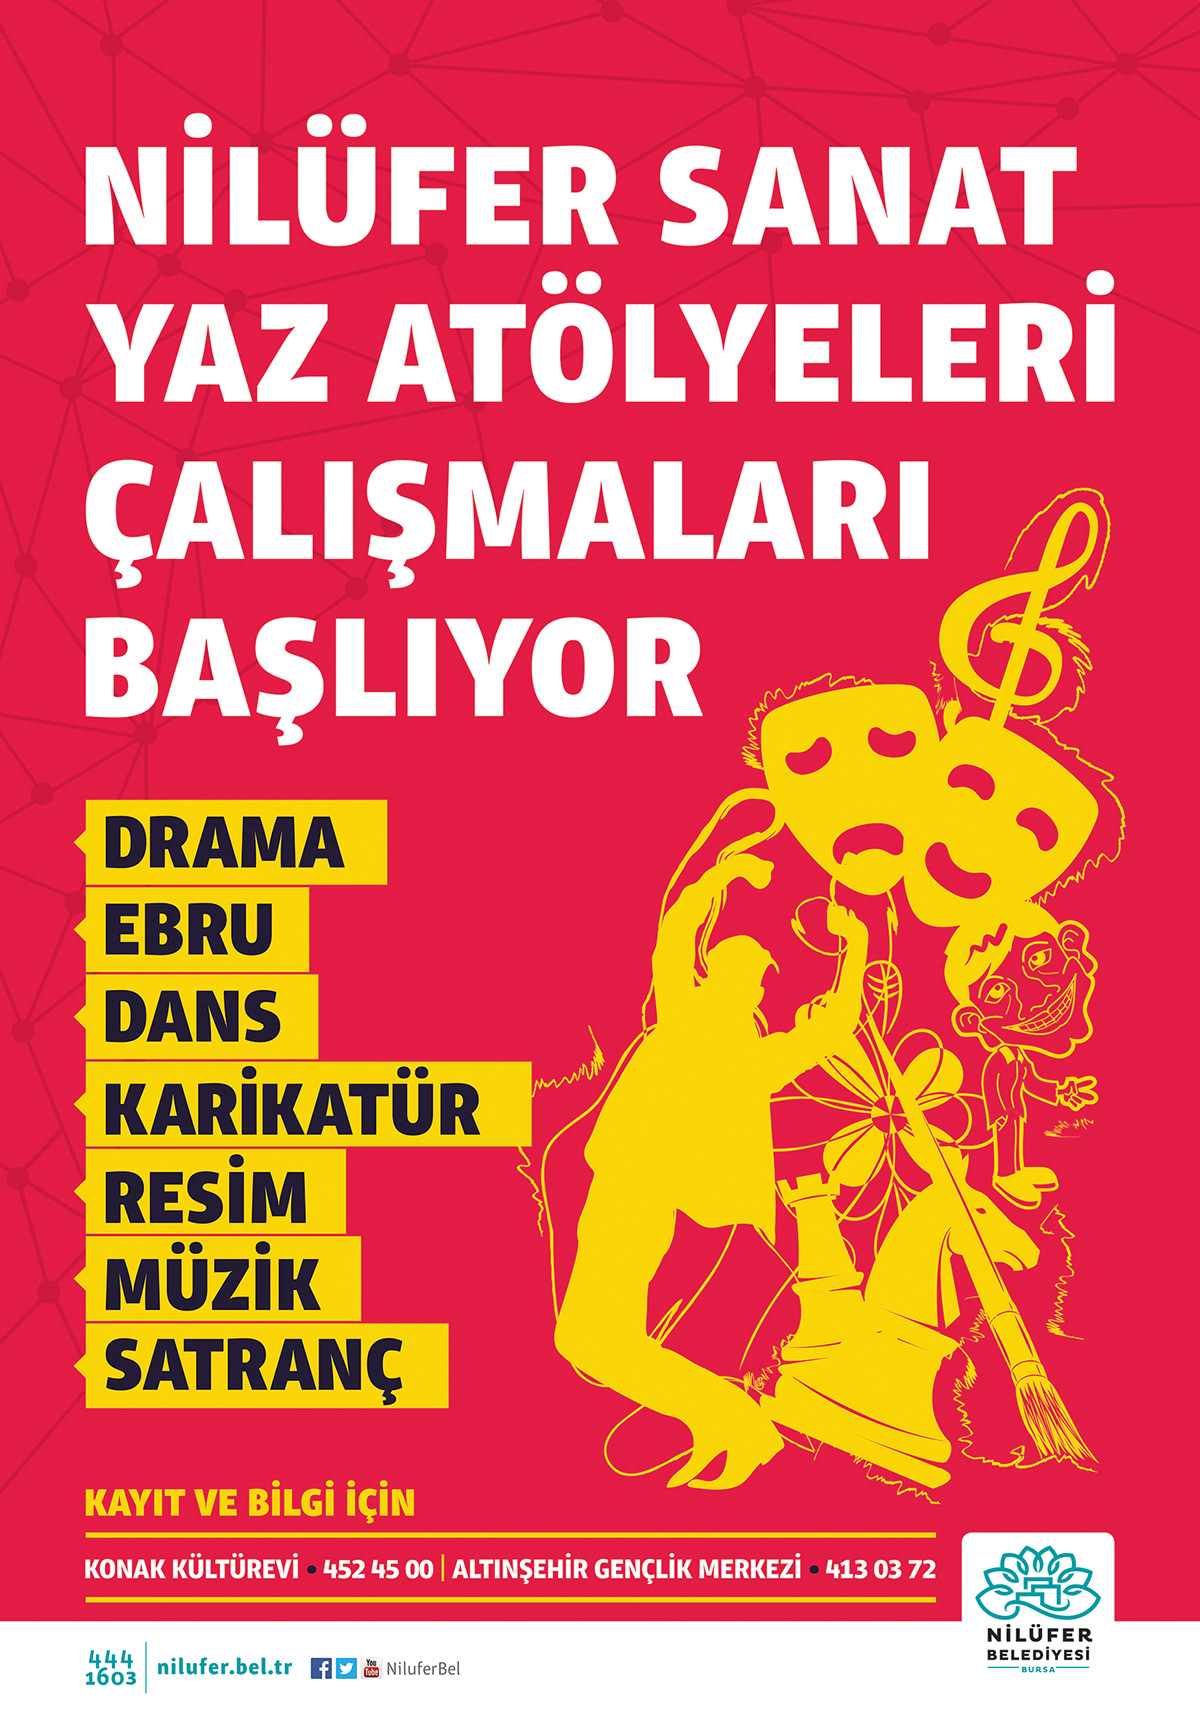 poster nazımhikmet sair şiir poet writer Street alpercanıgüz art sanat drama theater  DANCE   concert movie